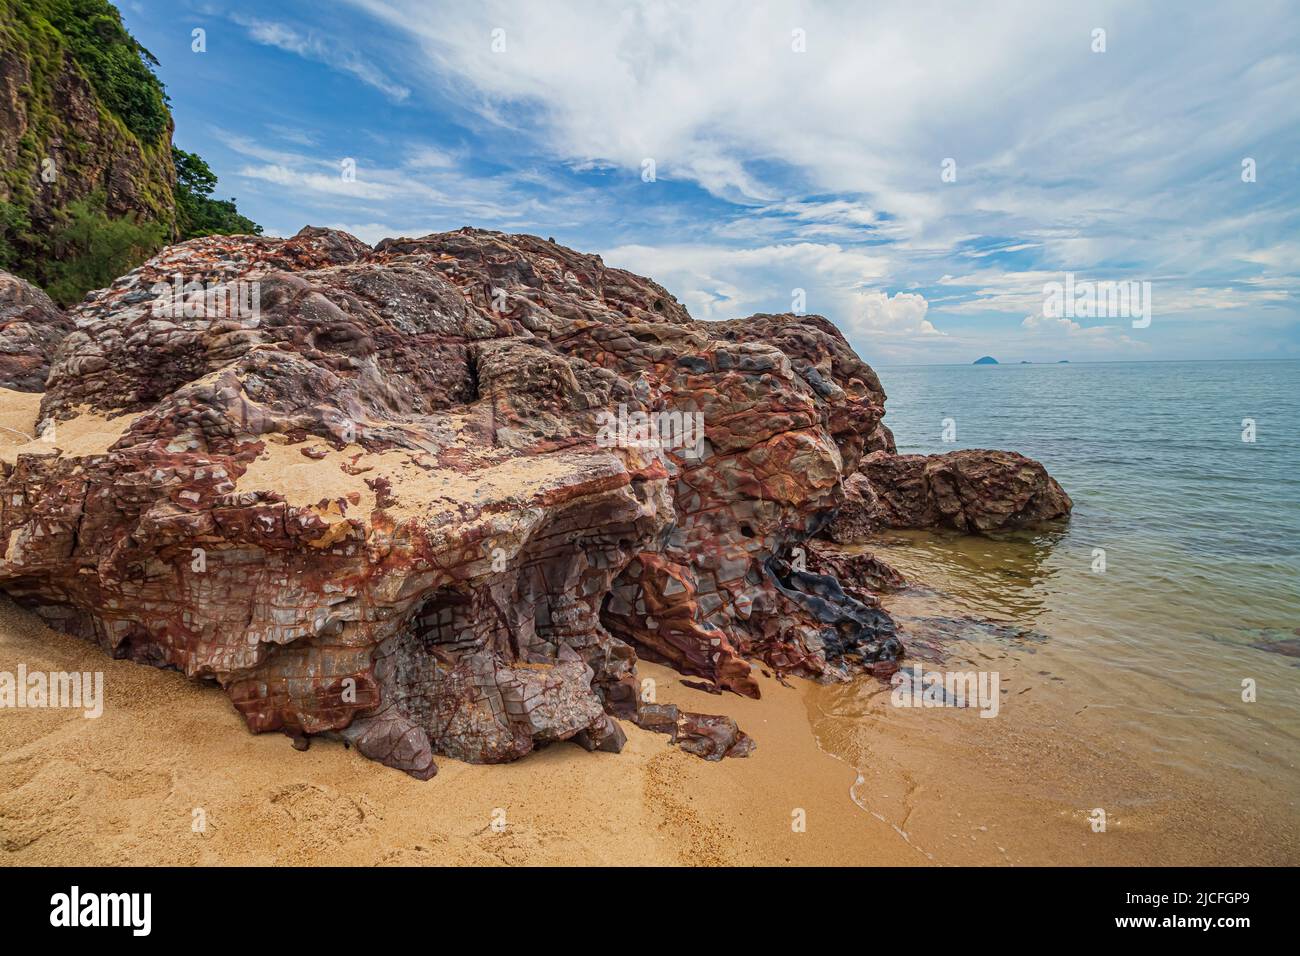 Am Strand von Pantai Dendong im Besut District von Terengganu, Malaysia, gelegene Landschaft am Meer mit Felsformationen und mit Vegetation bewachsenen Felsklippen. Stockfoto